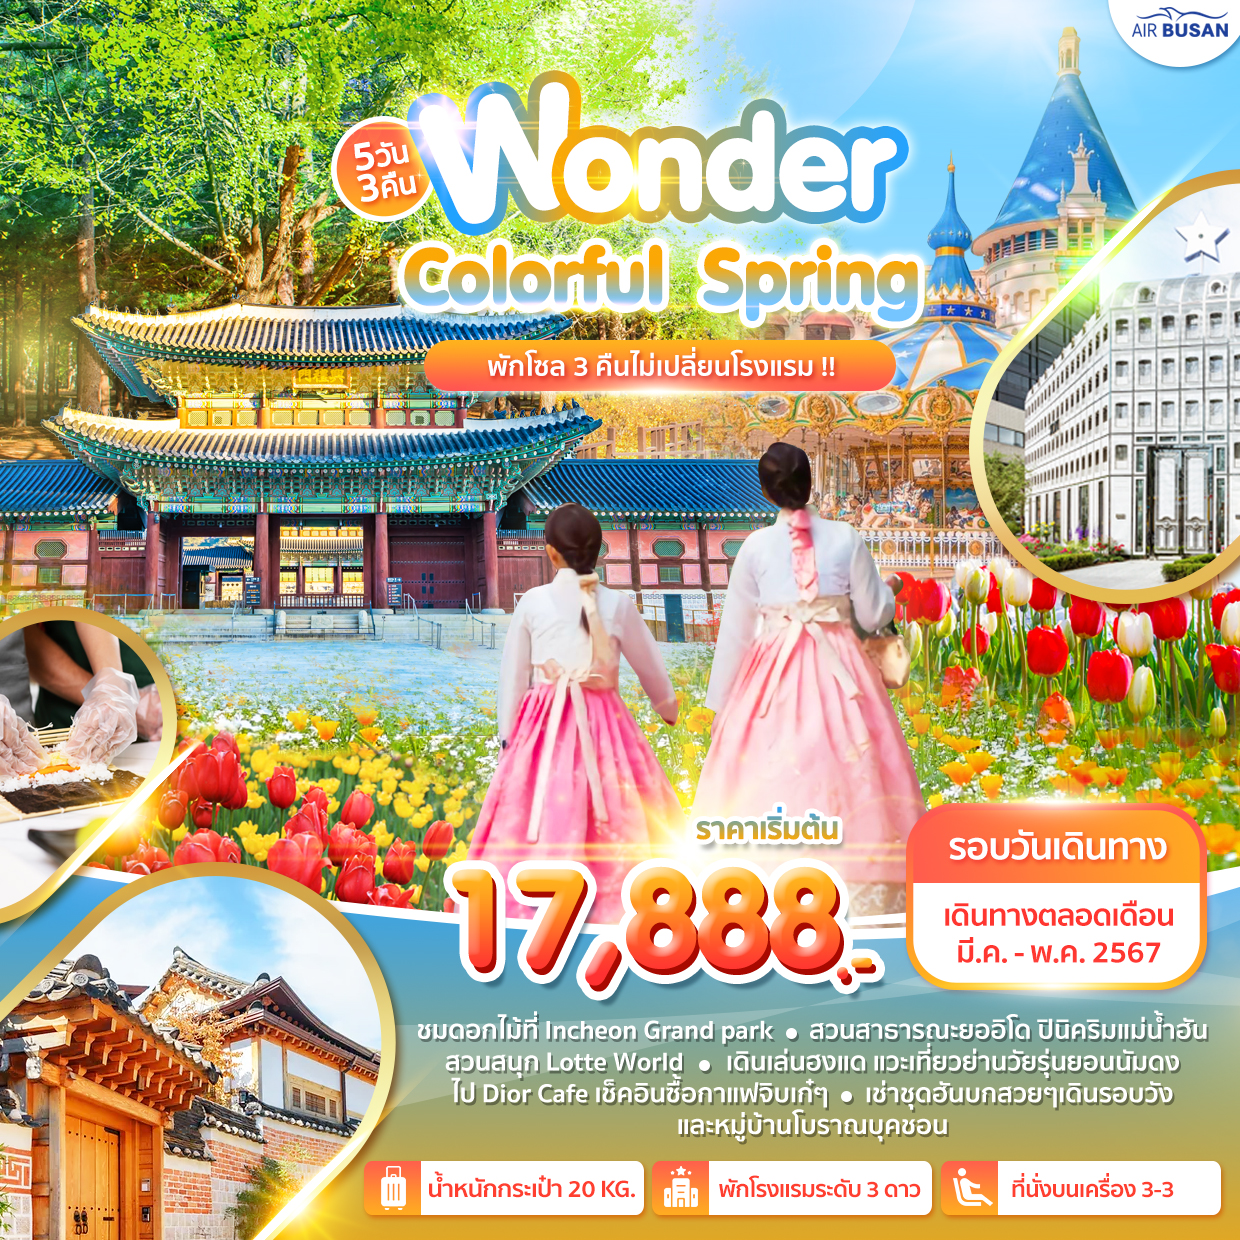 ทัวร์เกาหลี Wonder Colorful Spring 5D พักโซล 3 คืน ไม่เปลี่ยนโรงแรม!!!